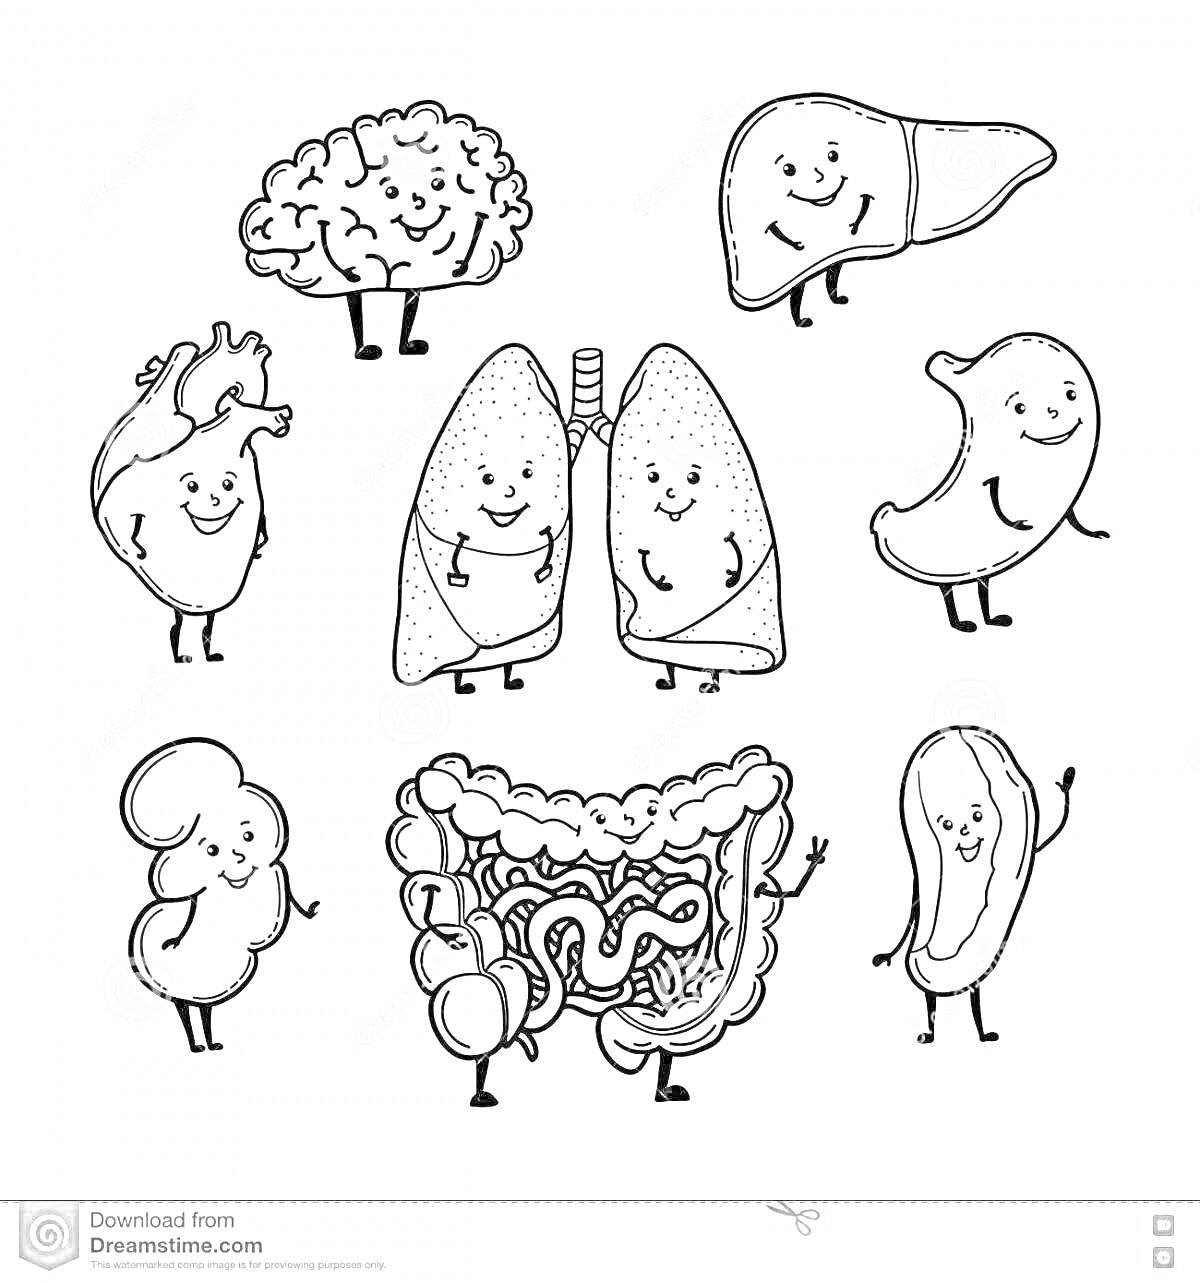 Раскраска Мультяшные органы человека: мозг, сердце, лёгкие, кишечник, печень, желудок, почка, поджелудочная железа